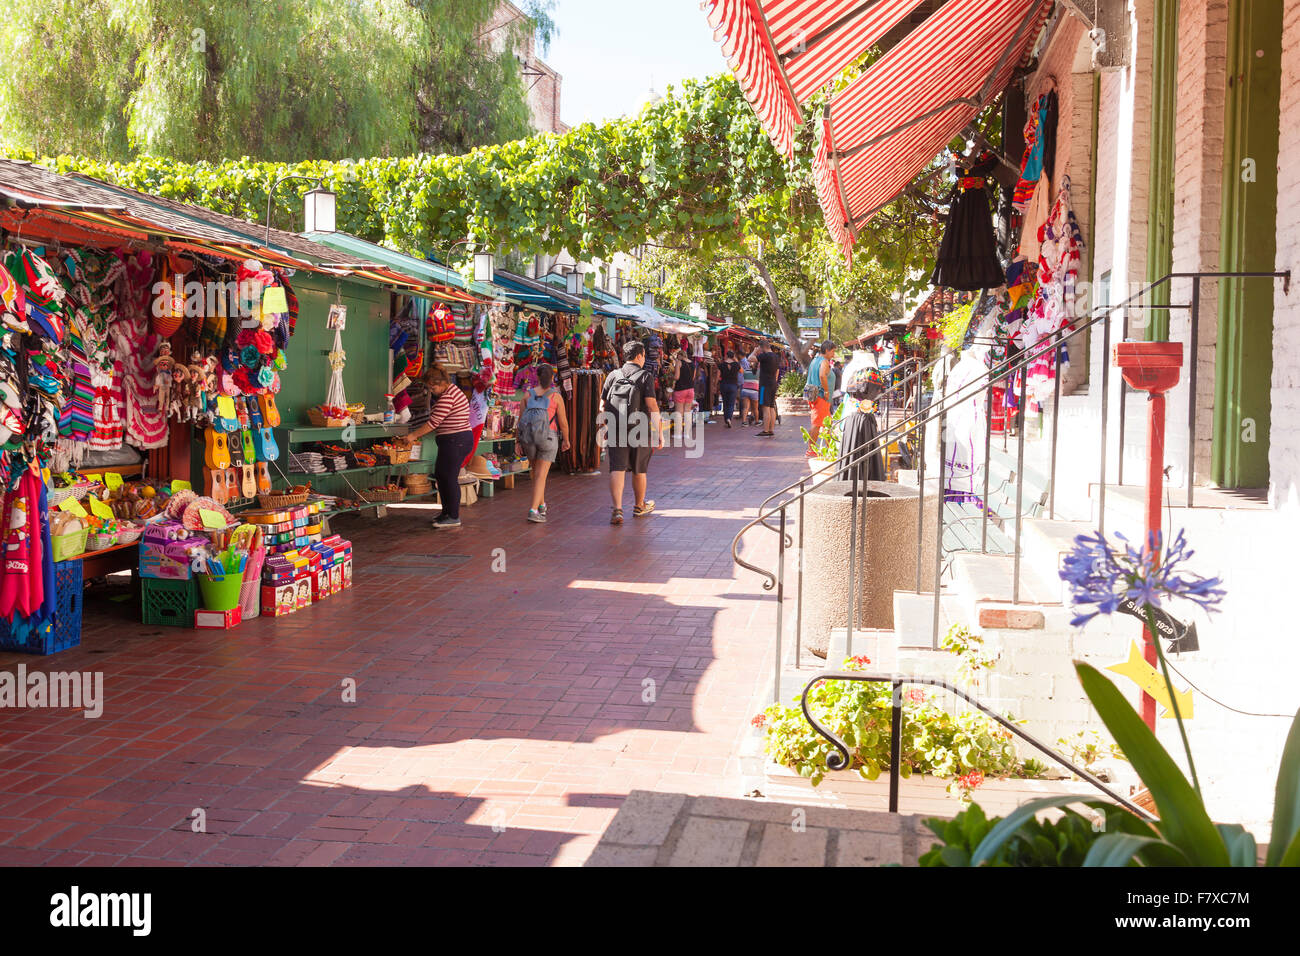 Strada del mercato di Los Angeles cabine di mercato su Olvera Street a Los Angeles Plaza storico distretto di Los Angeles, California, Stati Uniti d'America Foto Stock